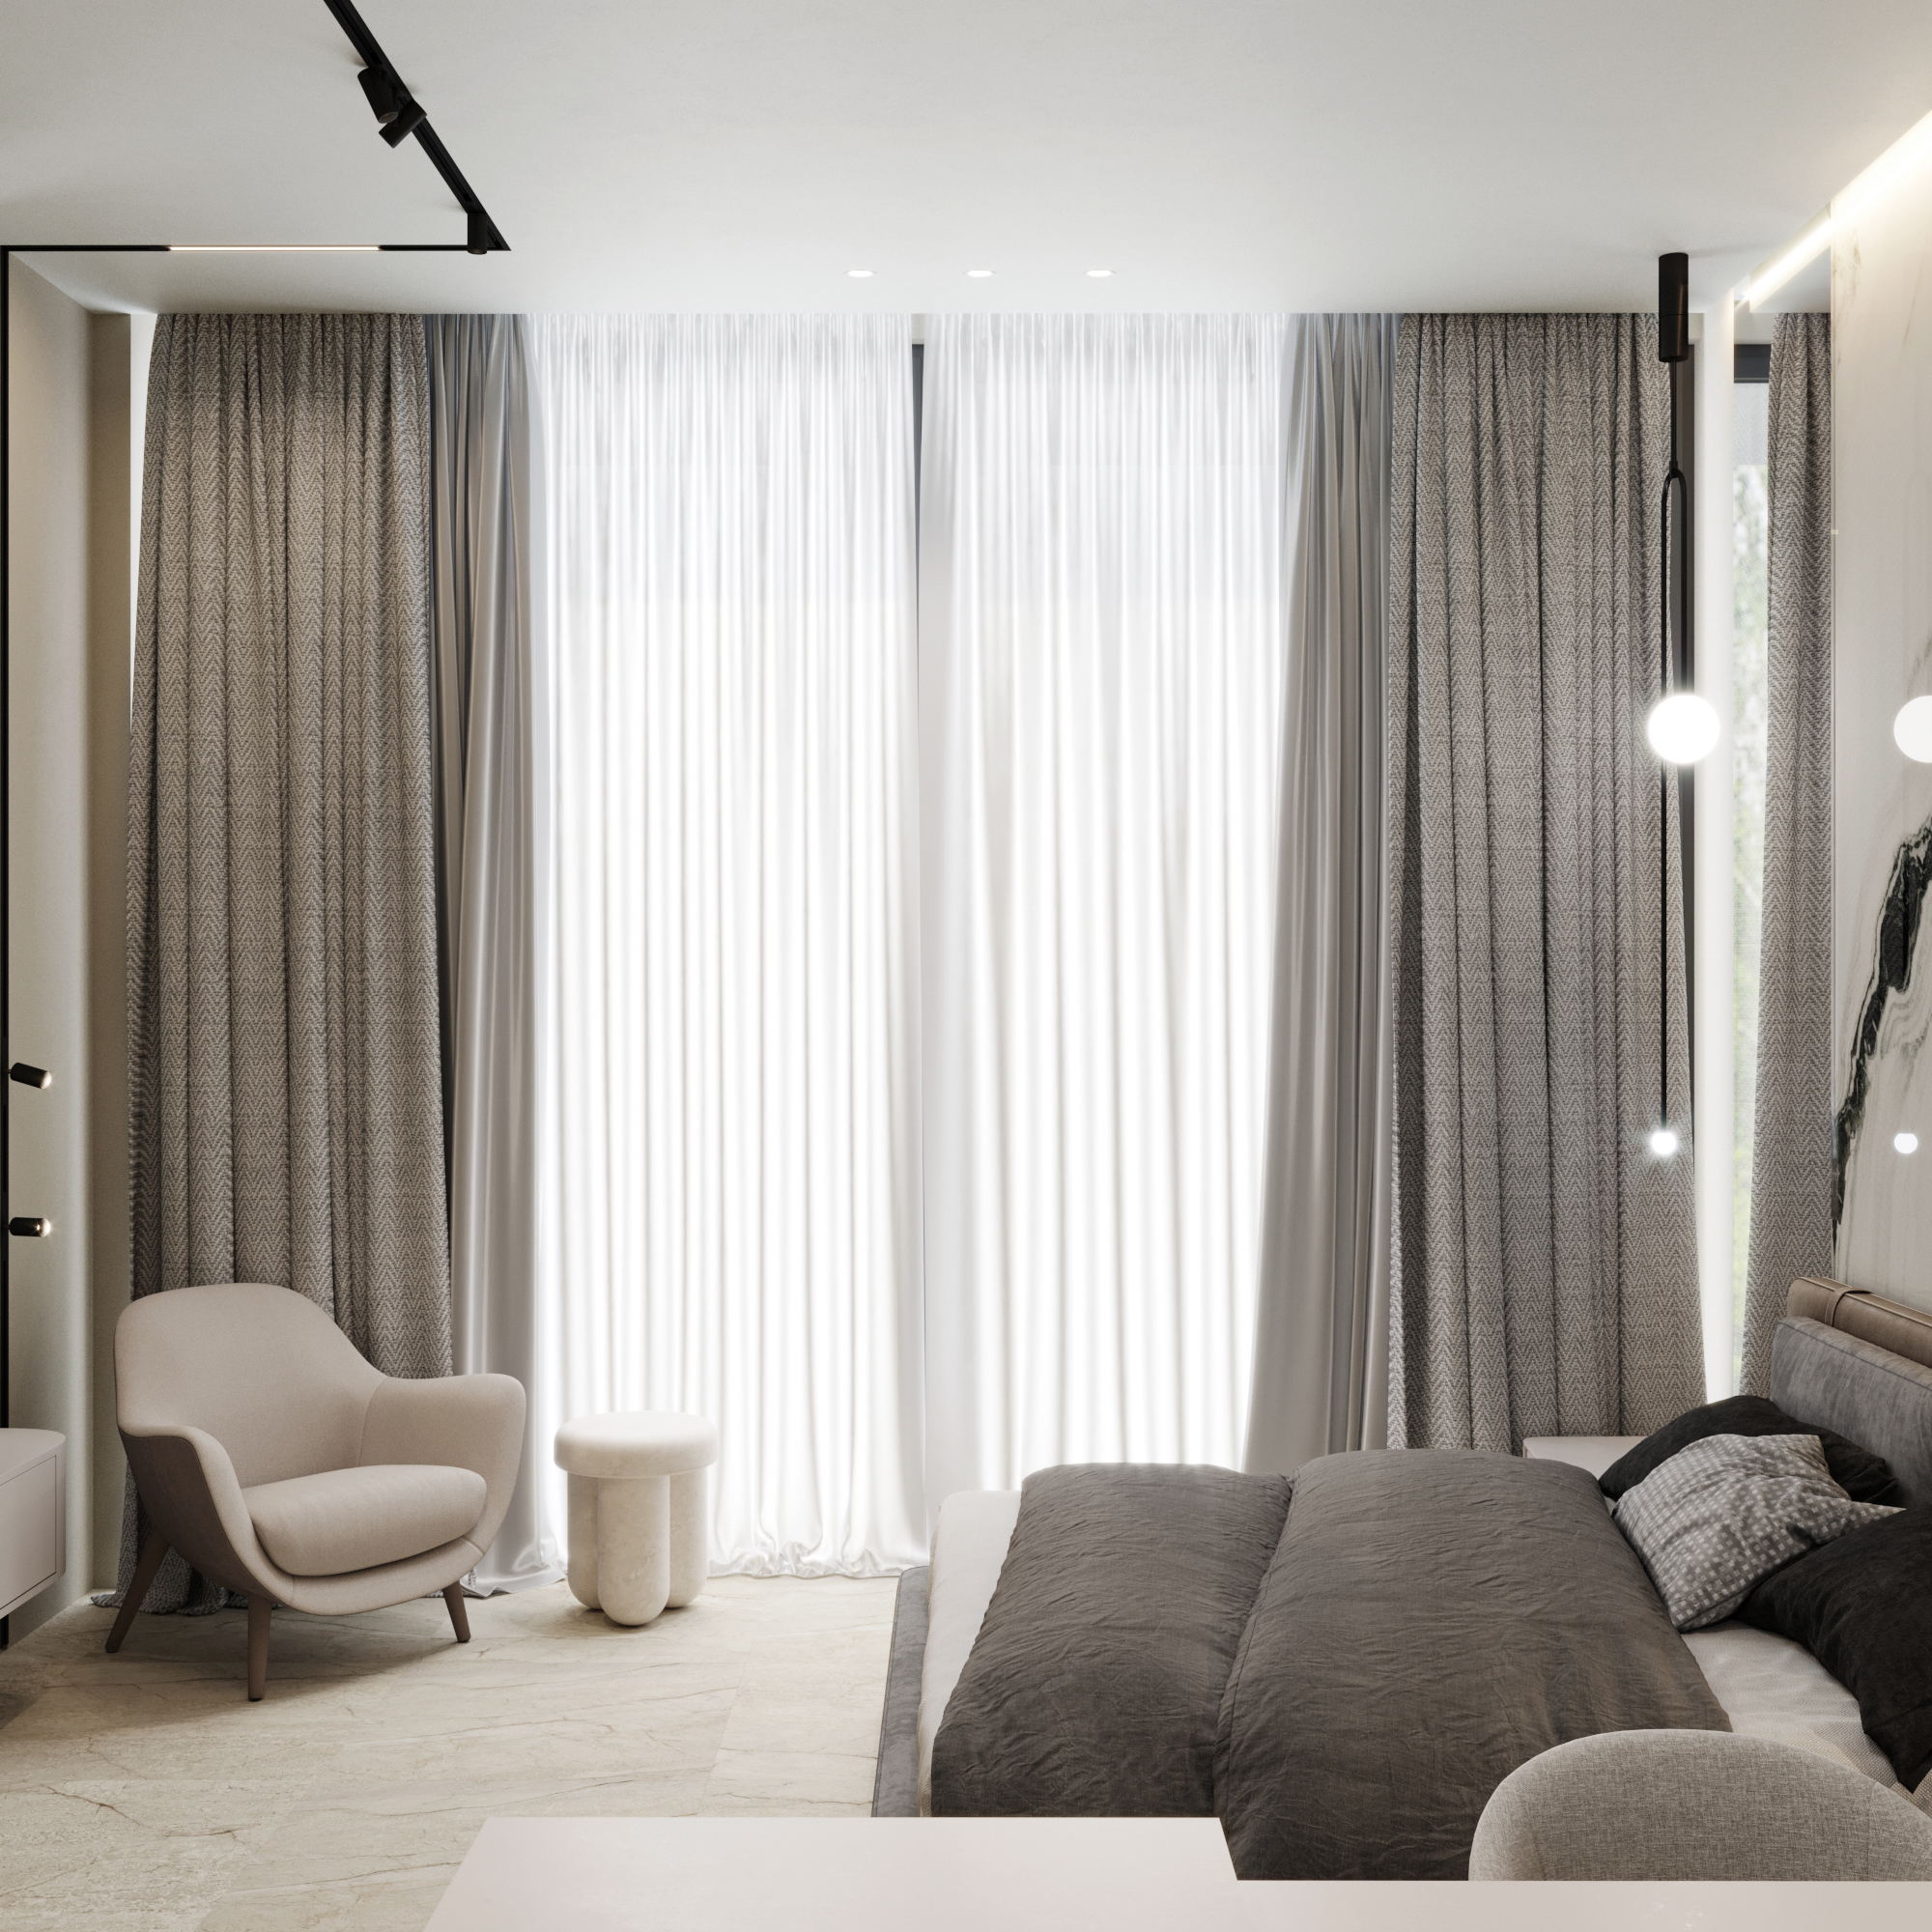 HILTON DOUBLE TREE Дизайн-проект гостинницы в стиле минимализм 46